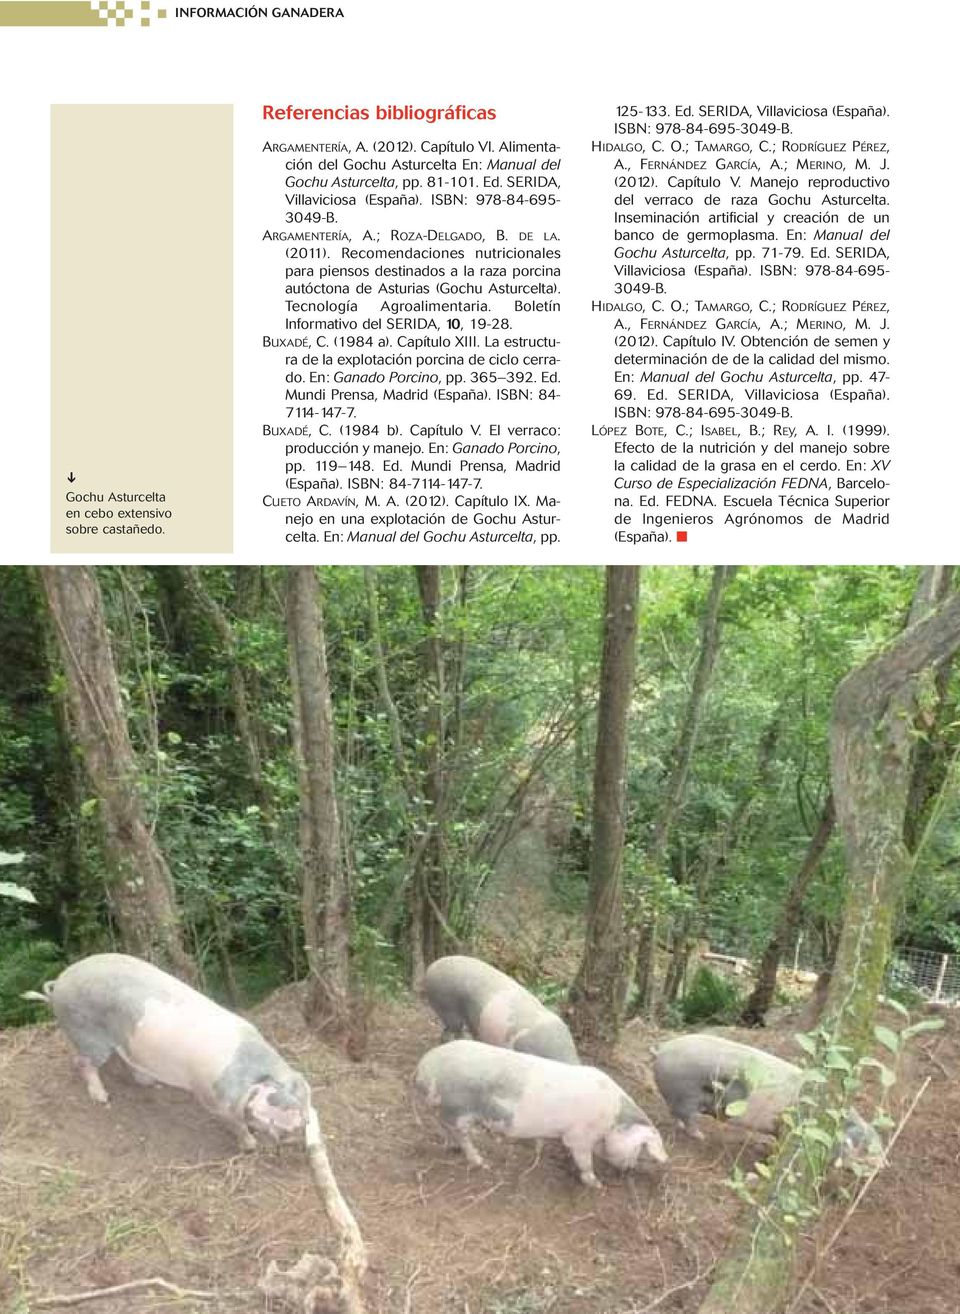 Recomendaciones nutricionales para piensos destinados a la raza porcina autóctona de Asturias (Gochu Asturcelta). Tecnología Agroalimentaria. Boletín Informativo del SERIDA, 10, 19-28. BUXADÉ, C.